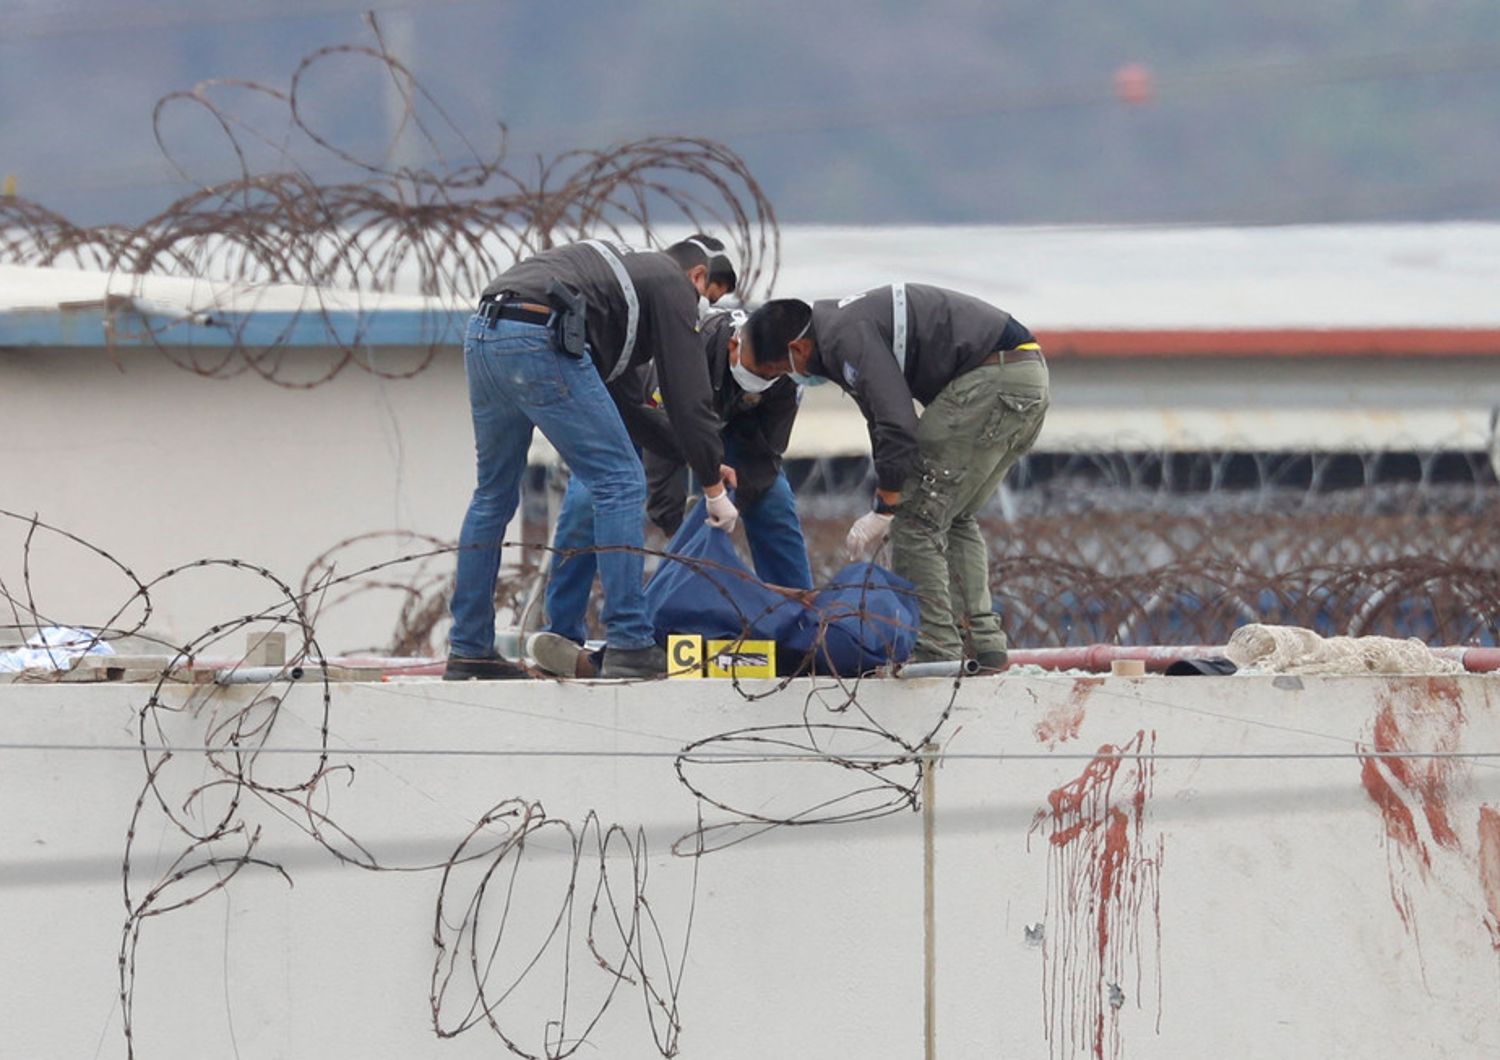 L'intervento della Polizia nel carcere di Guayaquil in Ecuador&nbsp;